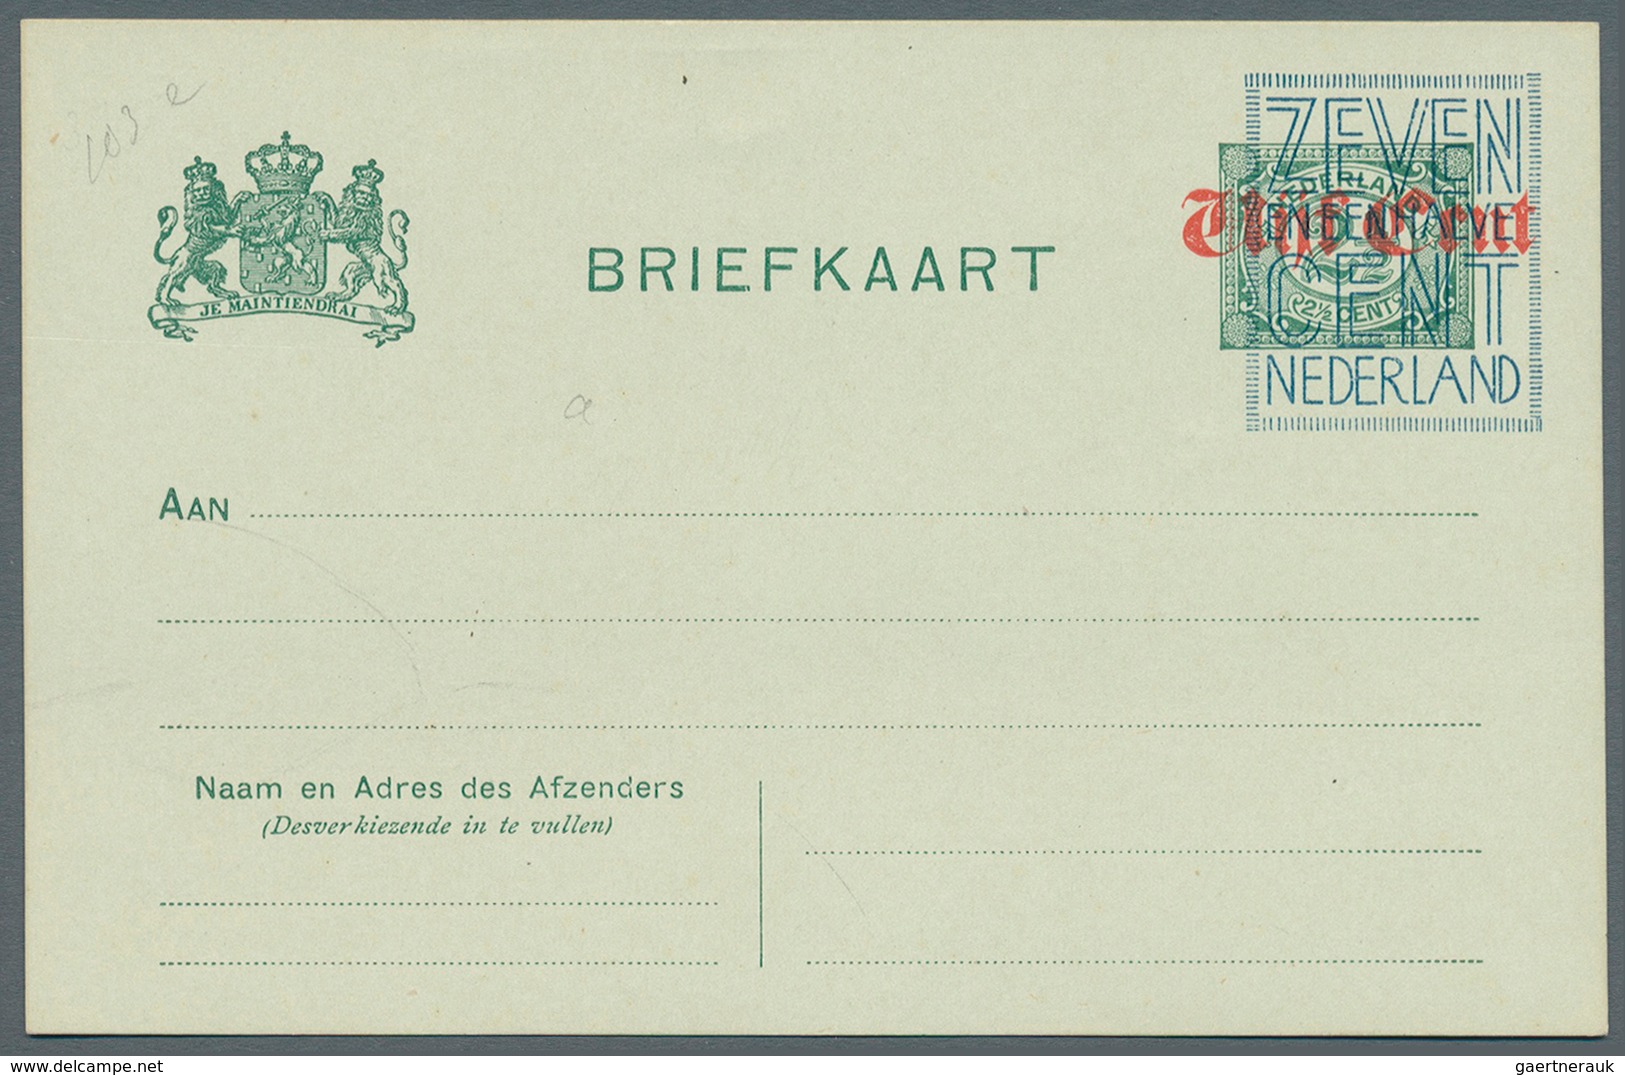 27500 Niederlande - Ganzsachen: Ca 1920: ca 26 verschiedene nicht verausgabte Überdruckprovisorien von Gan